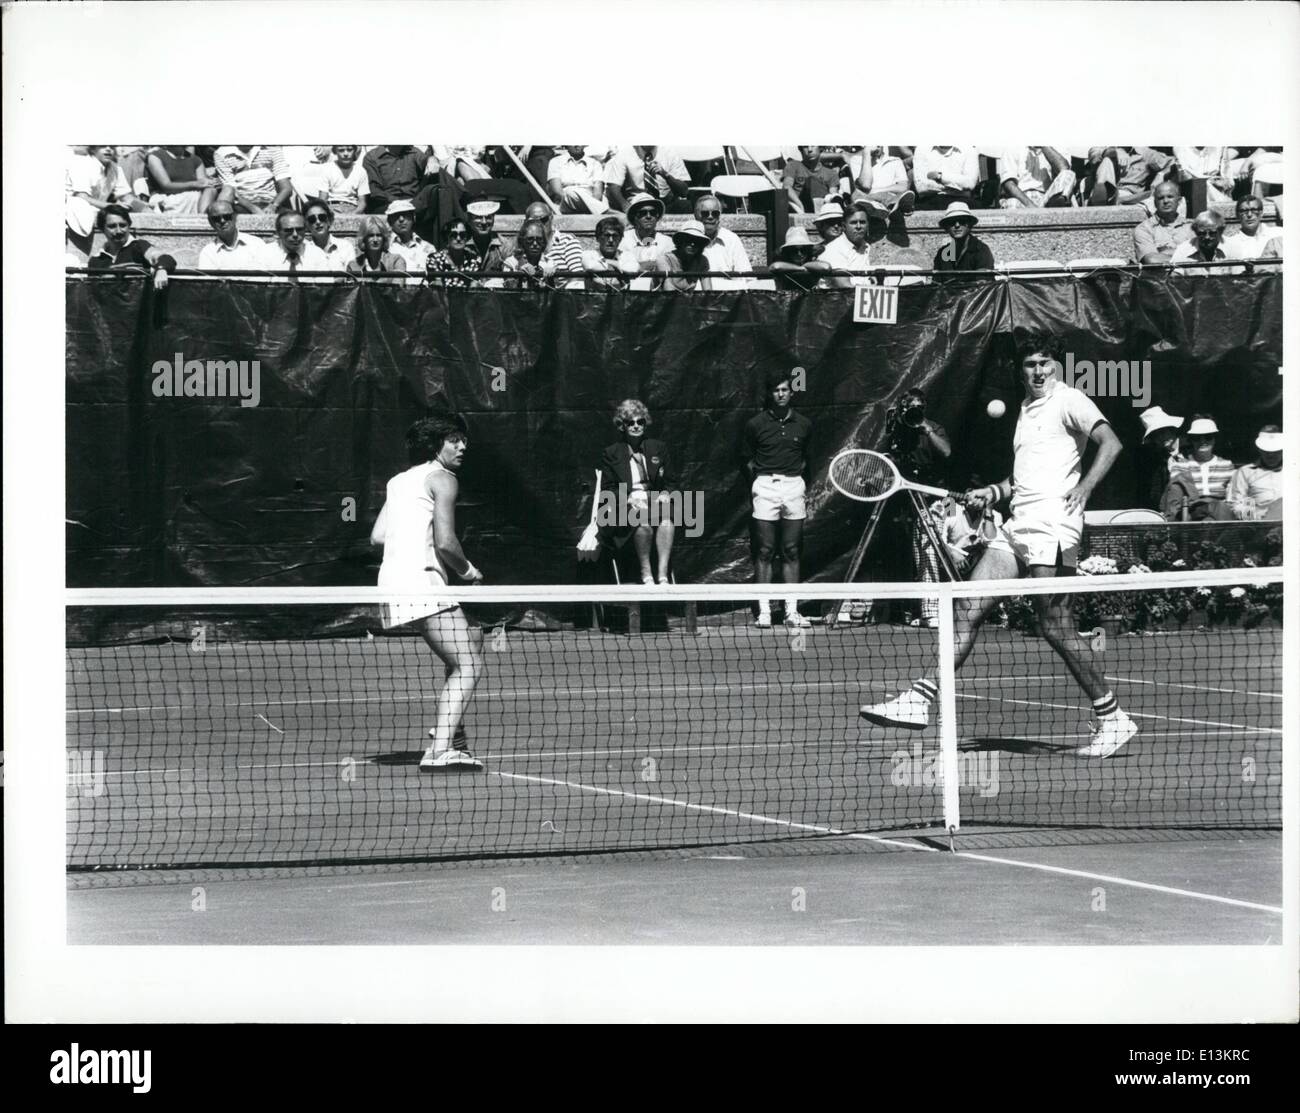 Mars 02, 2012 - Billie Jean King & Phil Dent, gagnant le double mixte des Internationaux des États-Unis. Forest Hills 1976 Banque D'Images